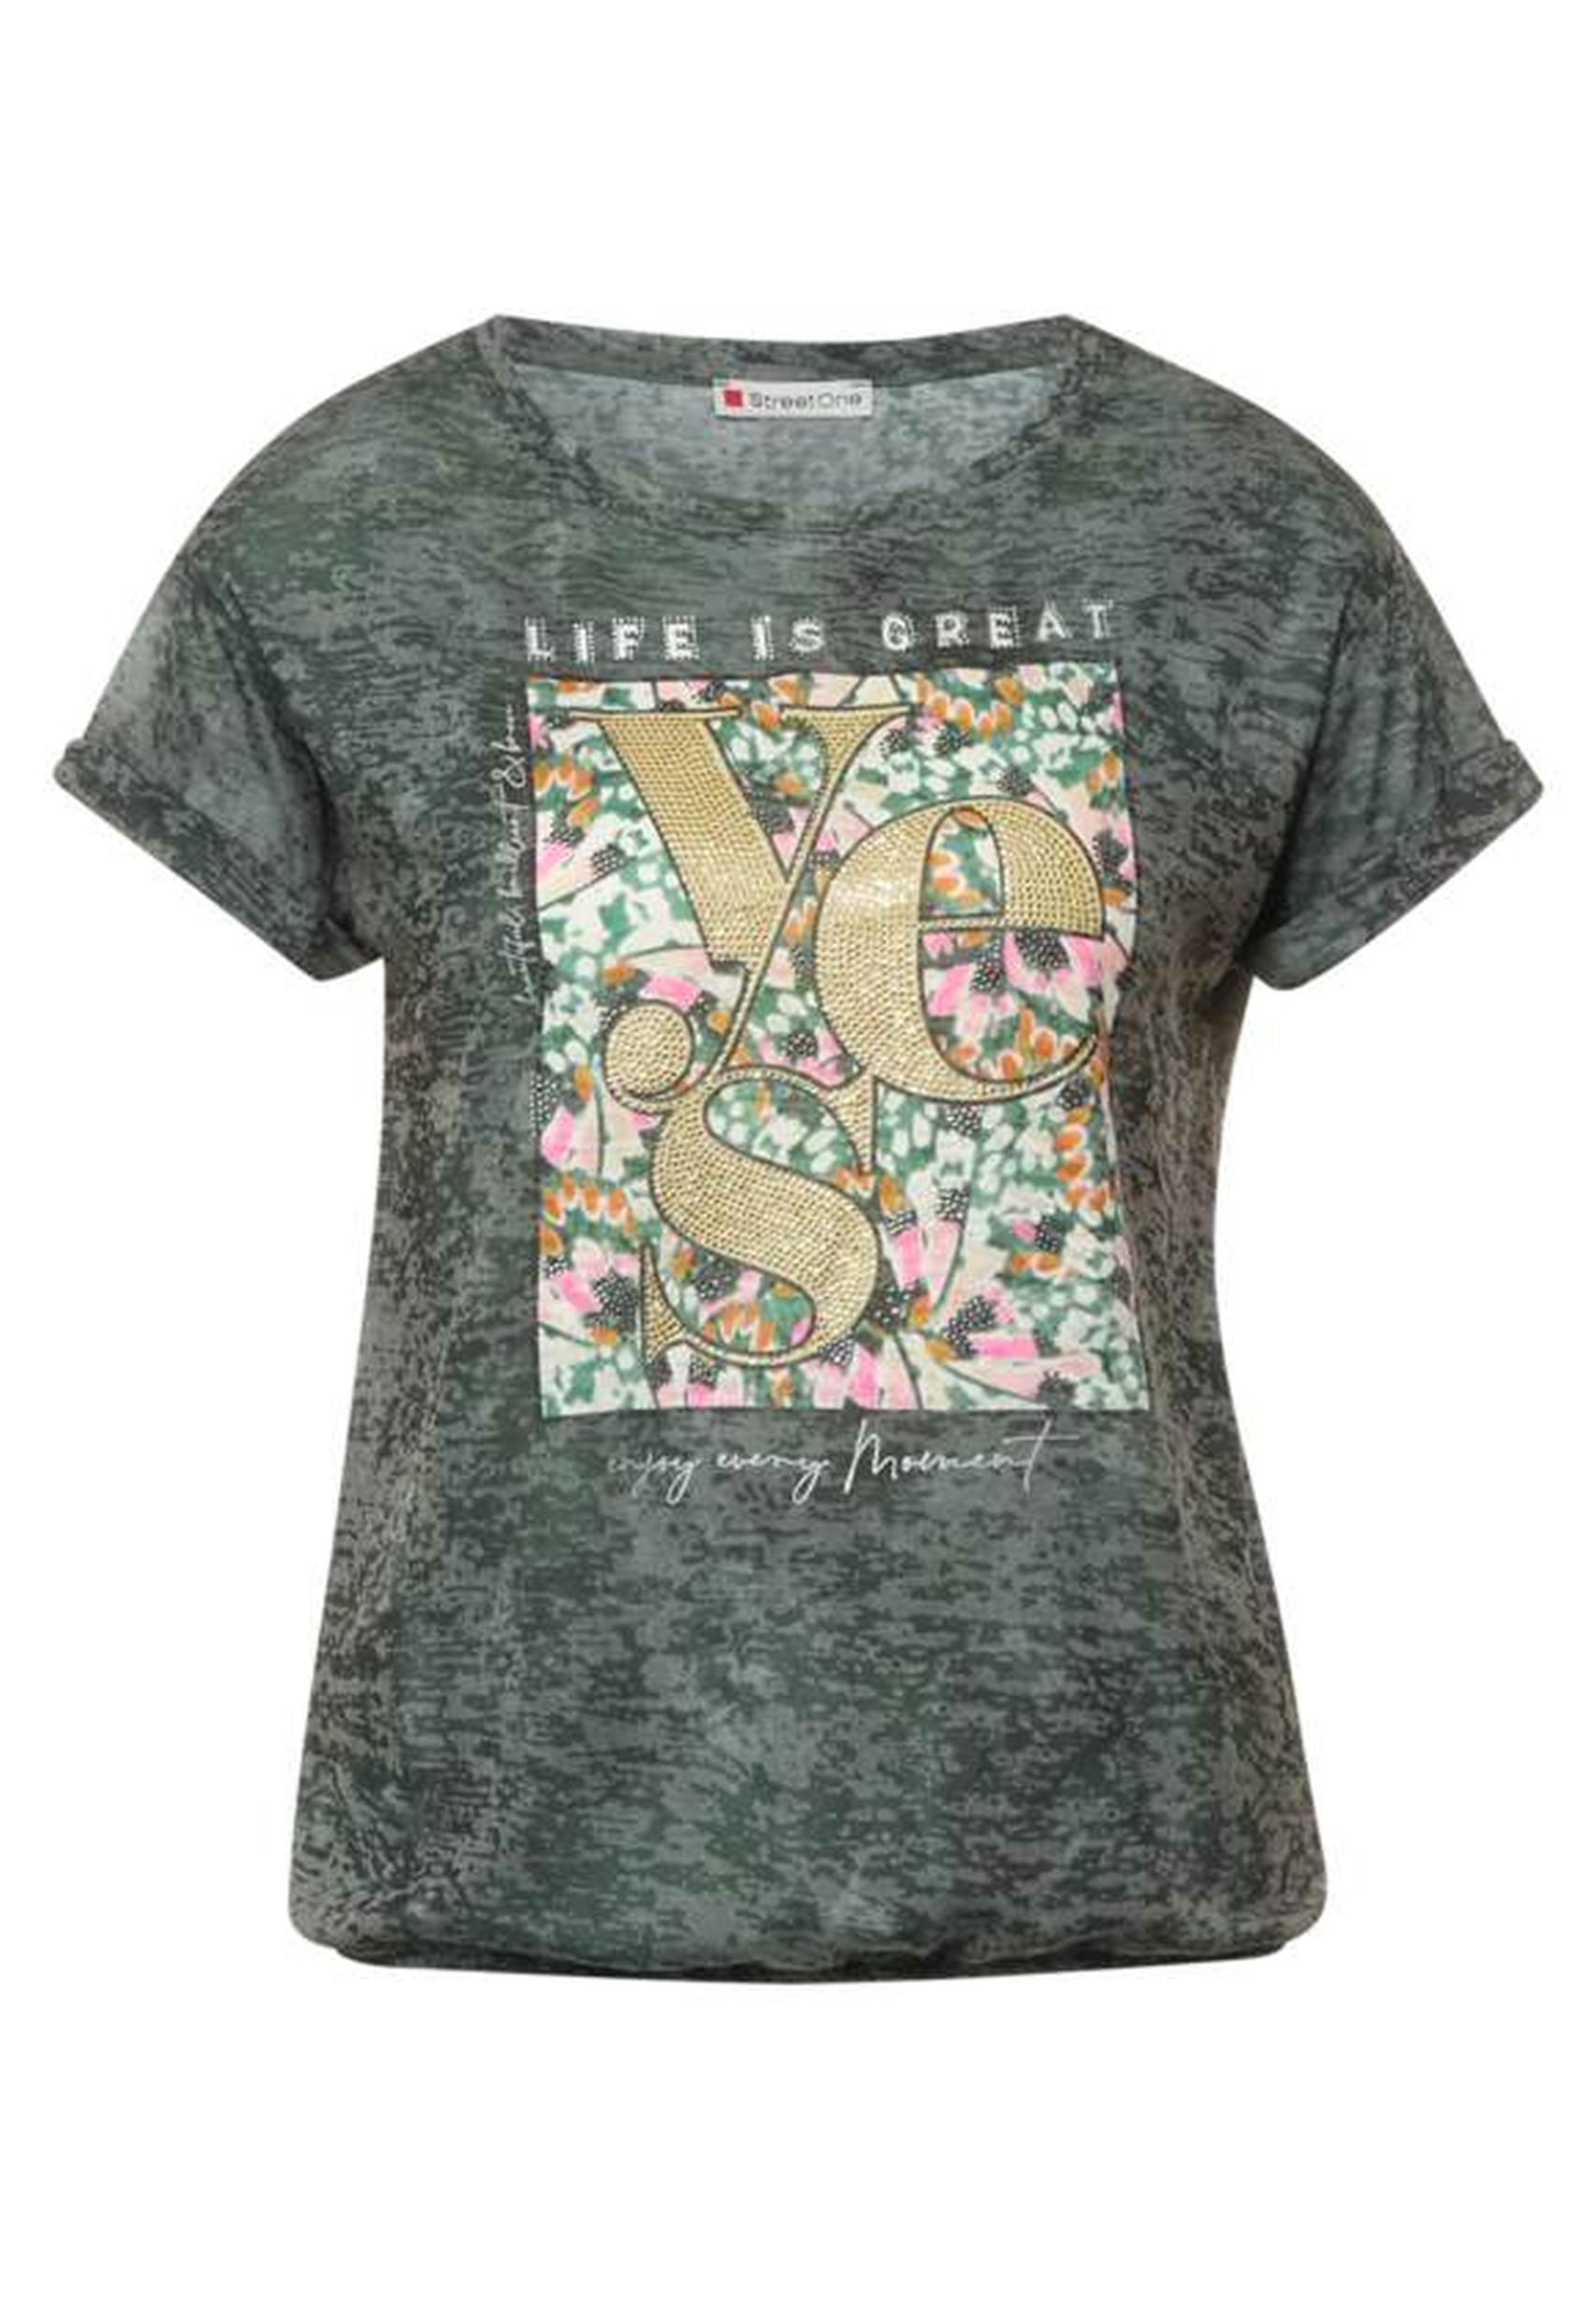 Sommerliches T-Shirt aus der Kollektion von Street One in bassy olive -  317591